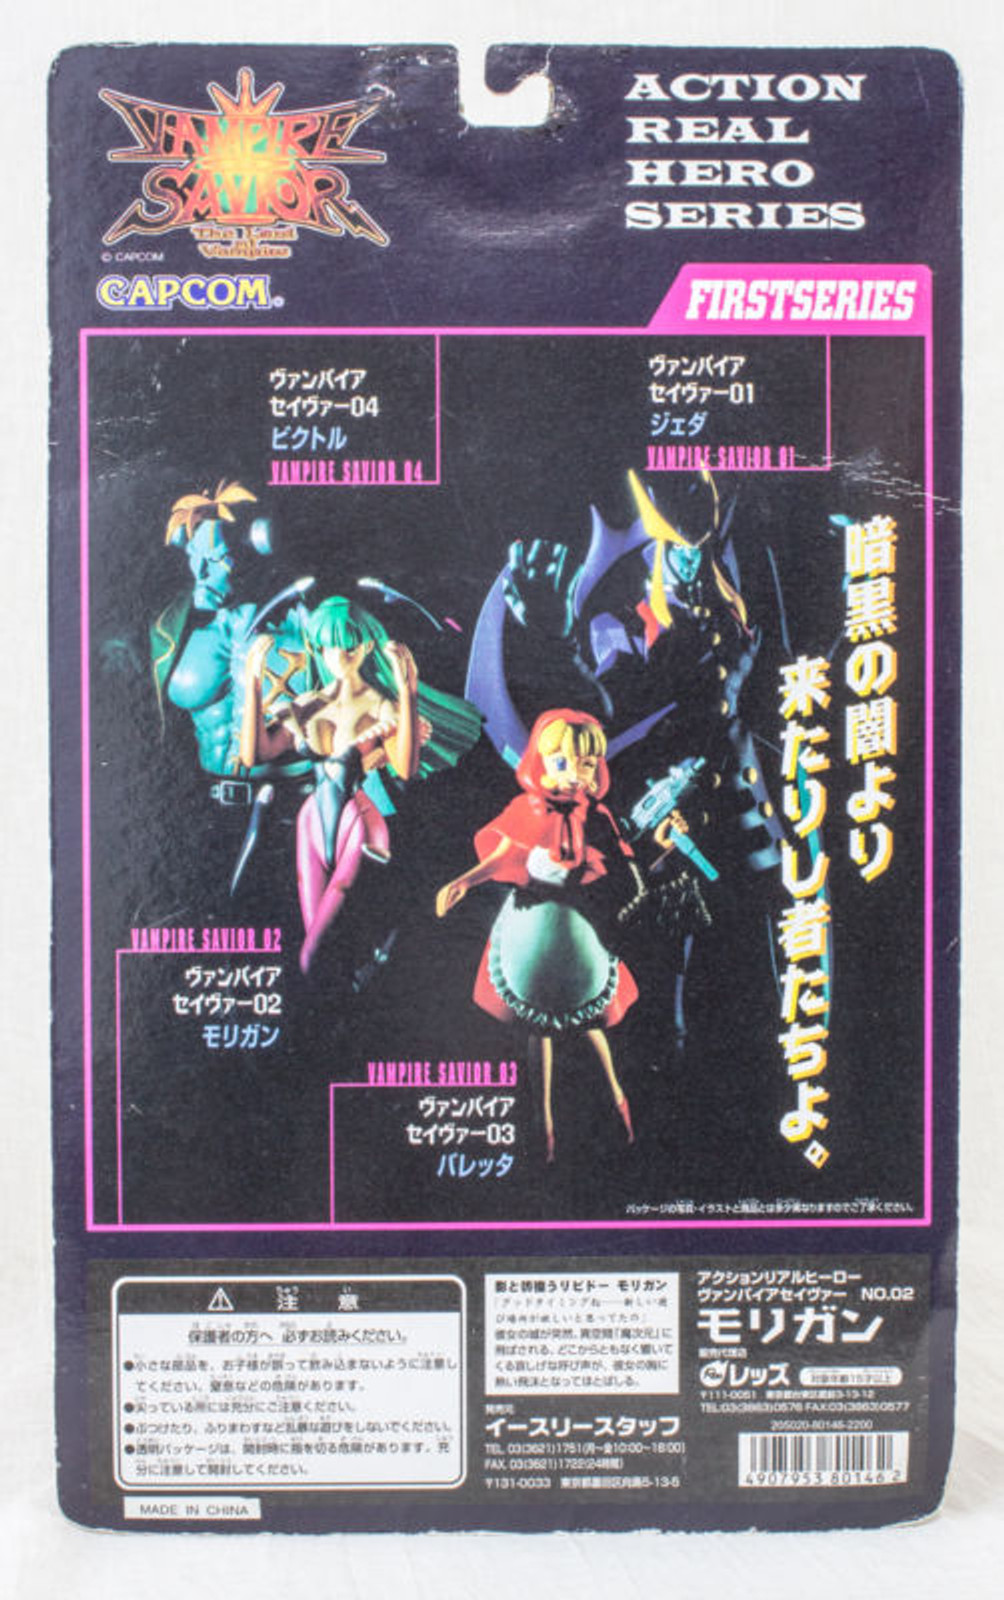 Darkstalkers 3 (Vampire Savior: The Lord of Vampire) MORRIGAN Action Real Hero Figure  JAPAN GAME CAPCOM